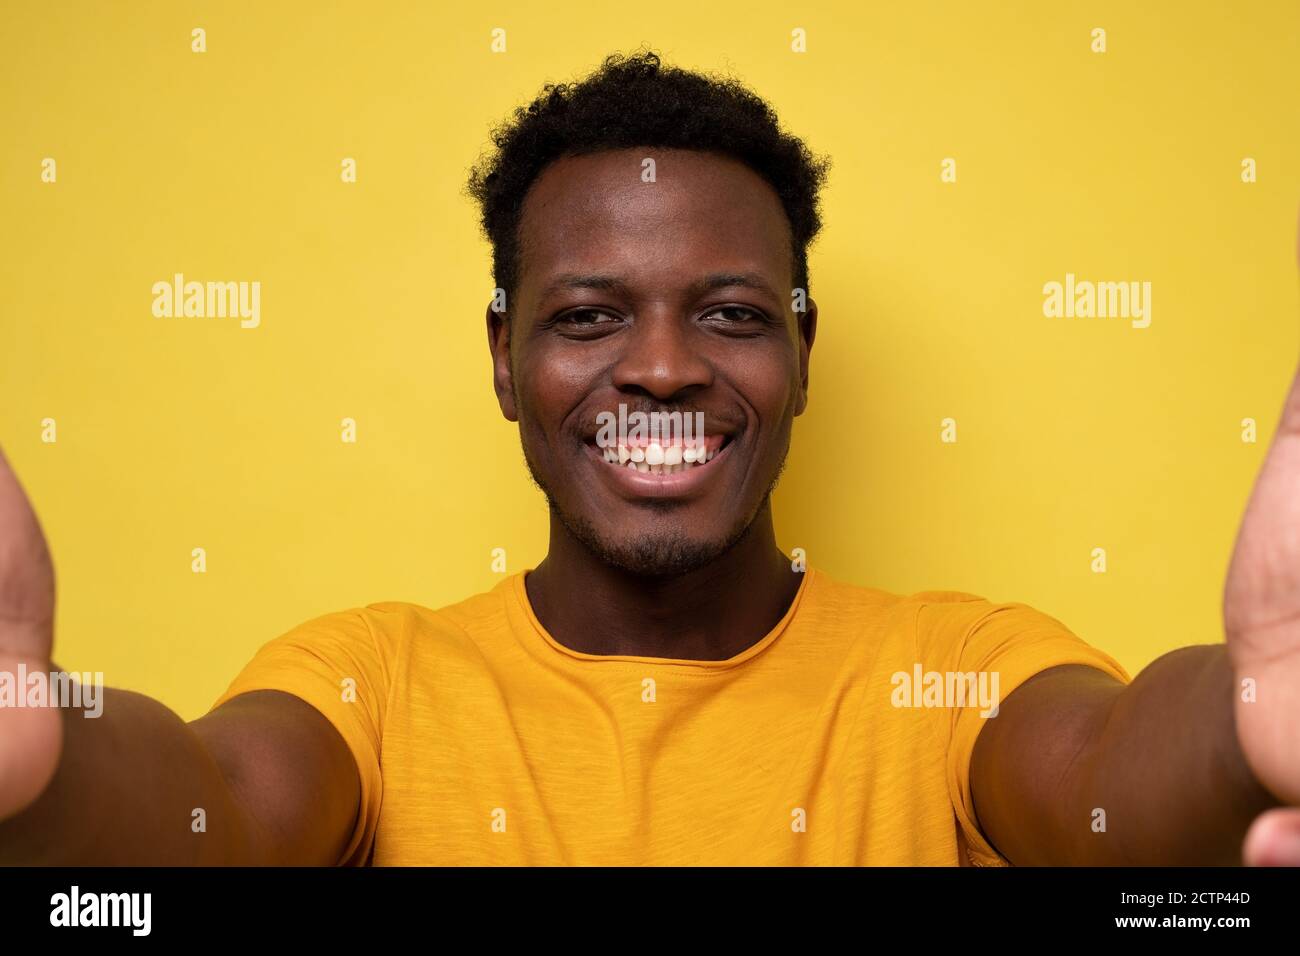 Souriant jeune homme africain faisant le selfie sur fond jaune Banque D'Images